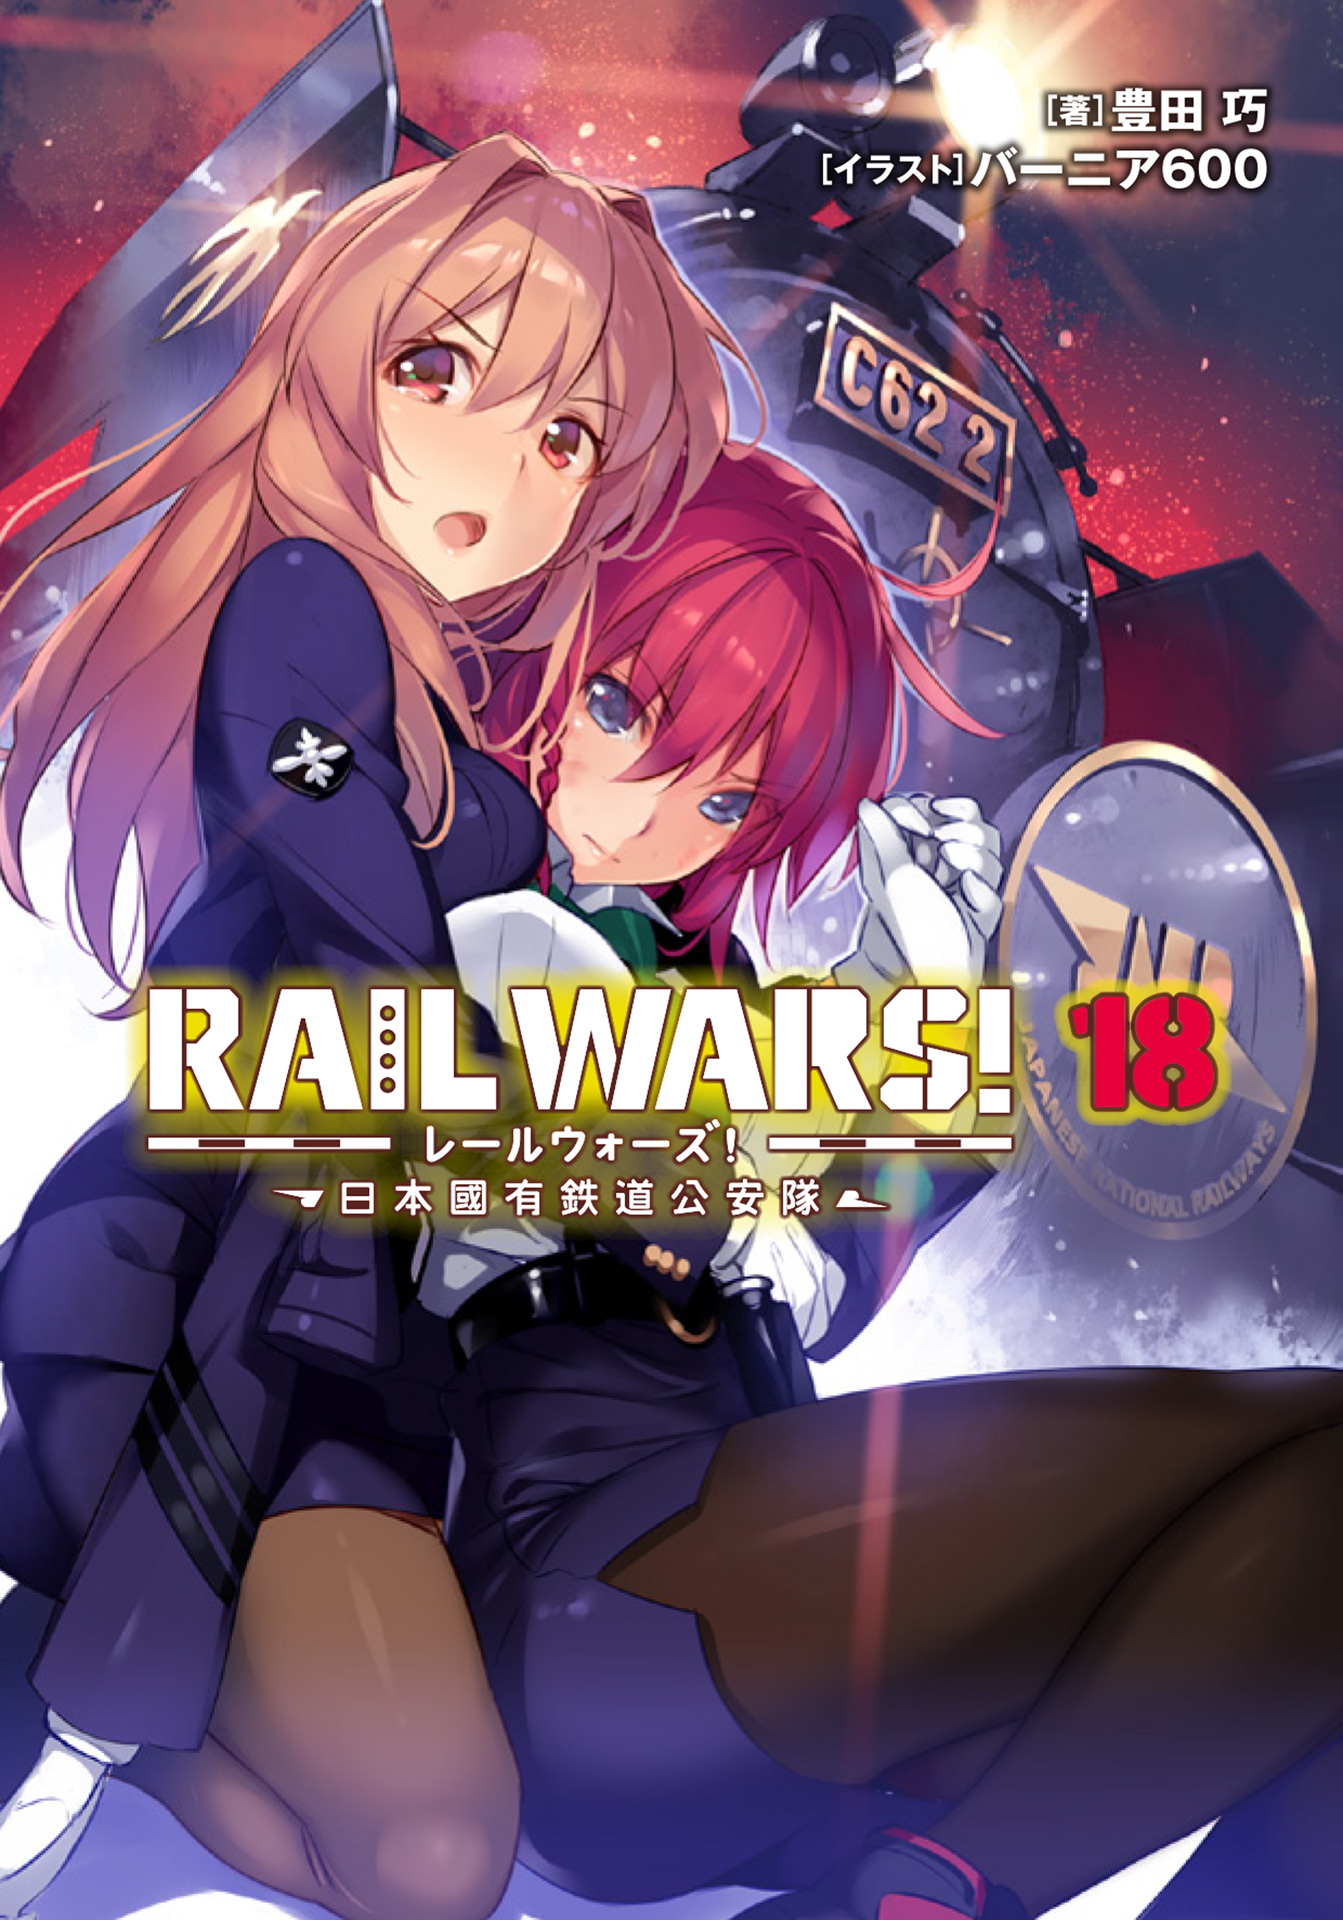 Rail Wars Anime Dub